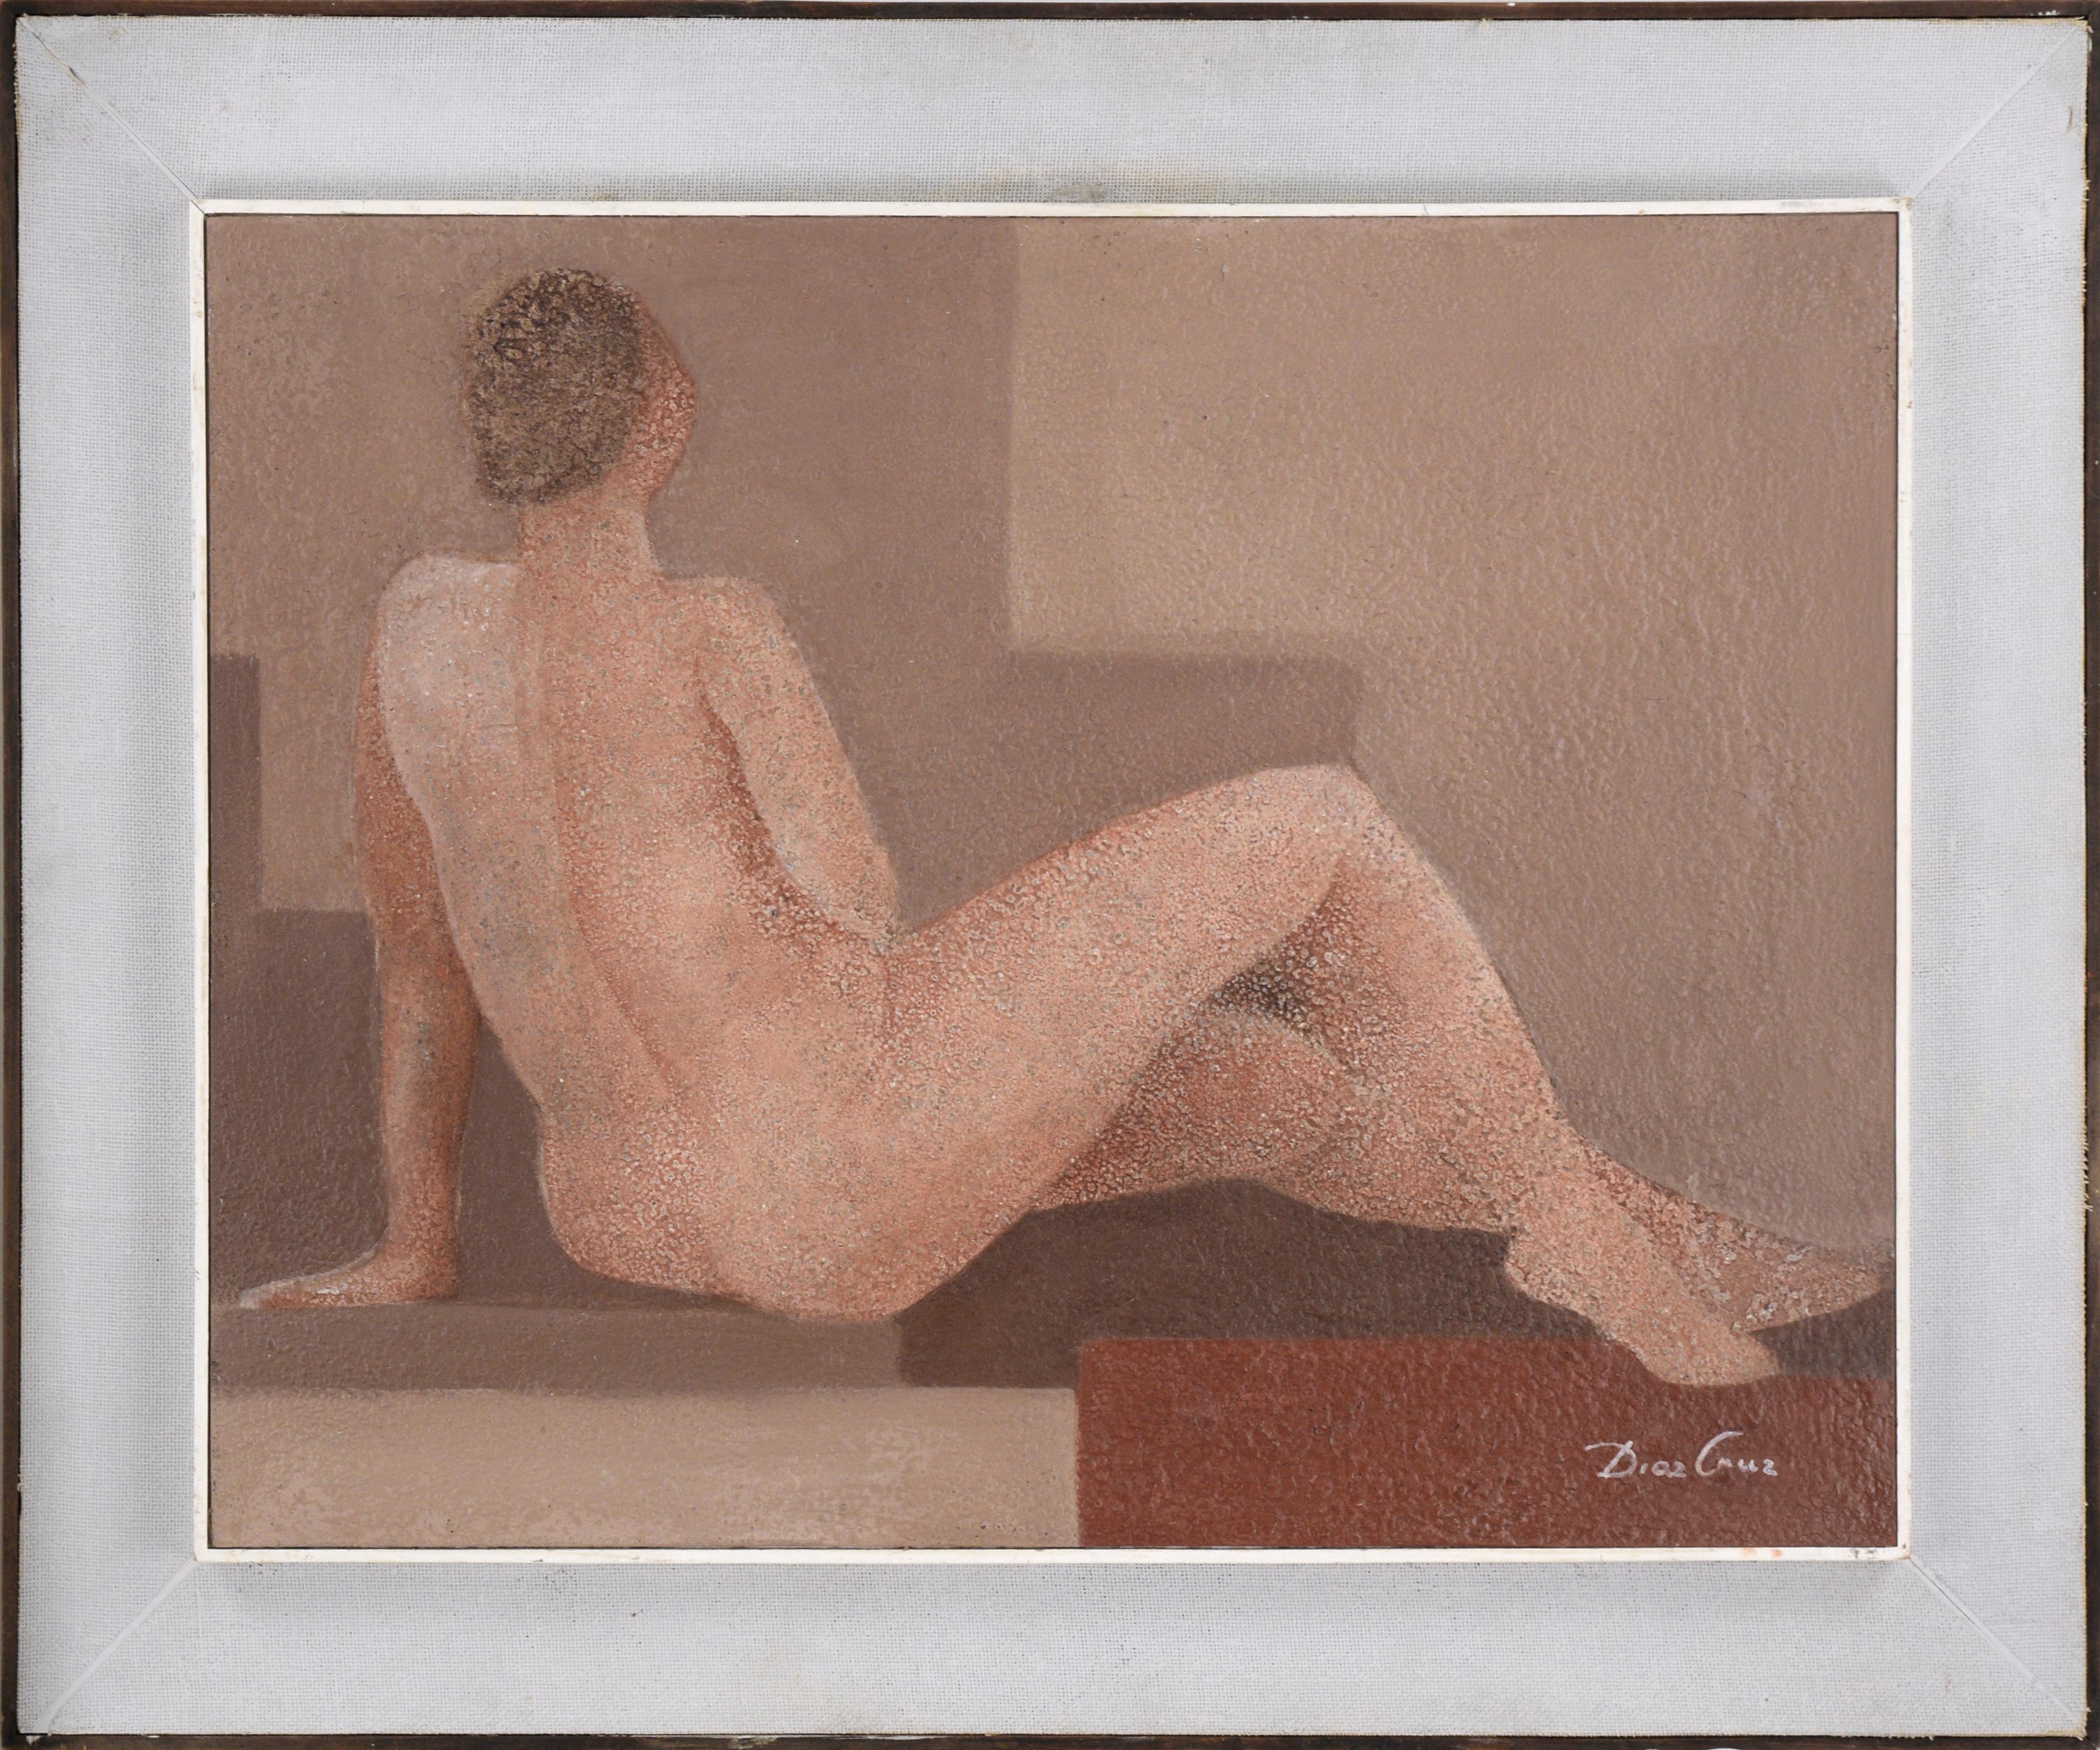 Diaz Cruz Nude Painting – Moderne moderne liegende nackte weibliche Figur 